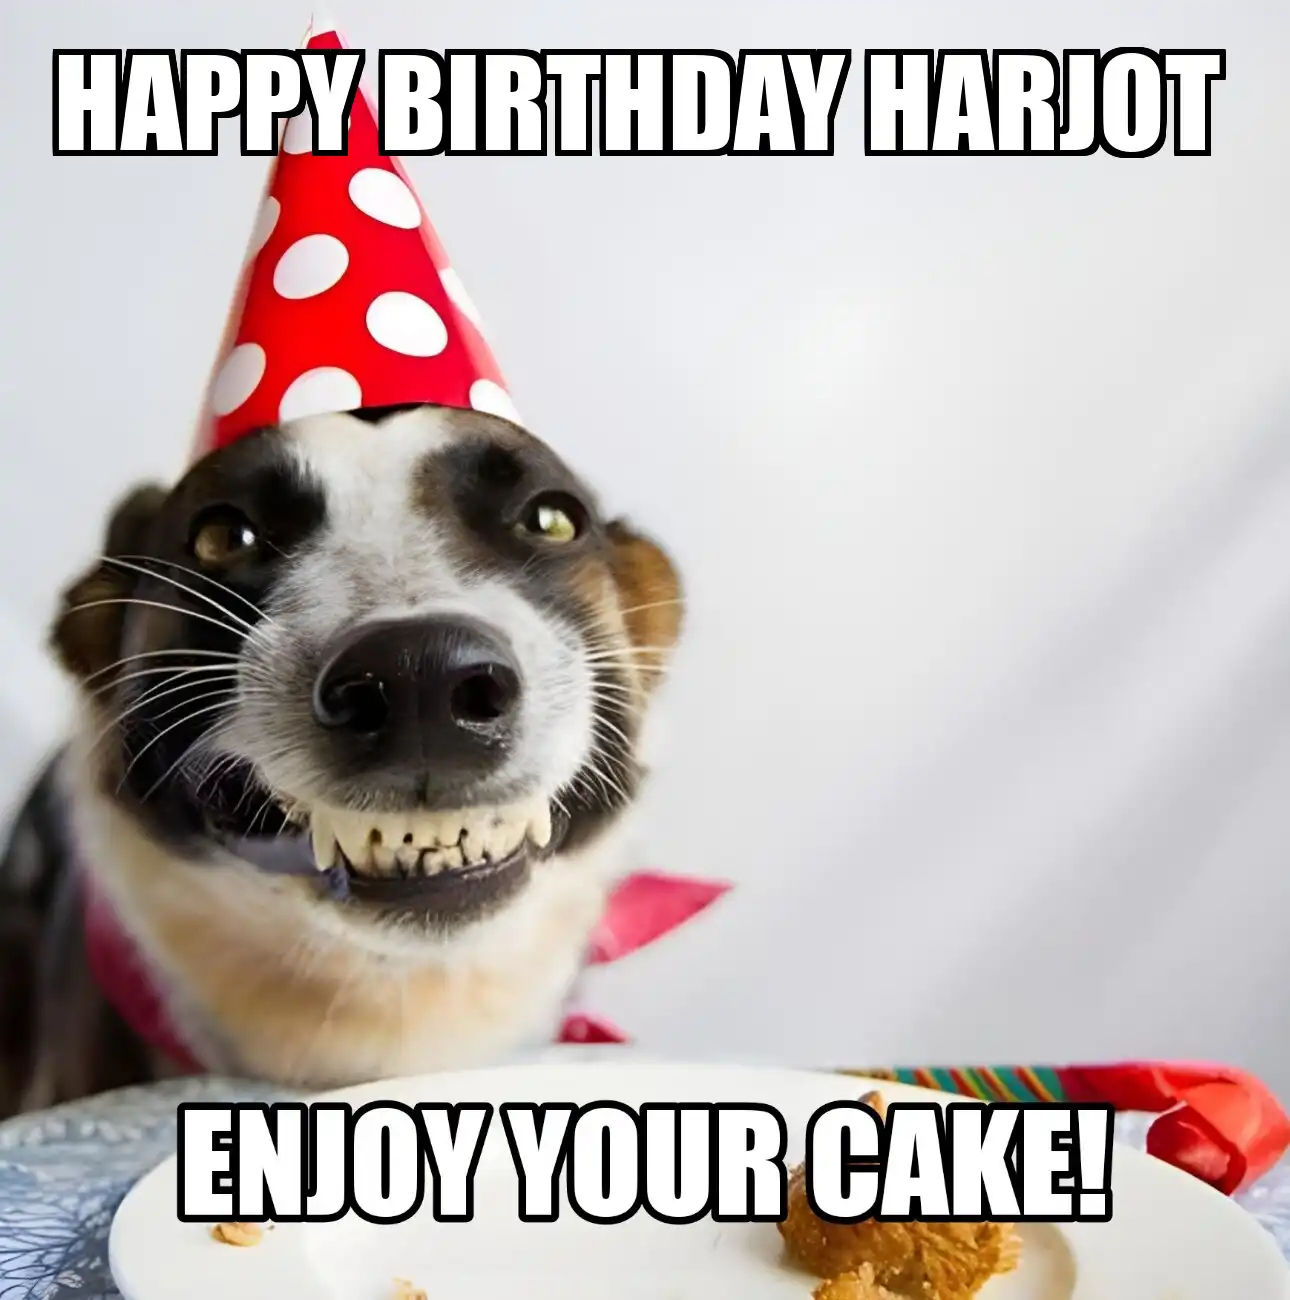 Happy Birthday Harjot Enjoy Your Cake Dog Meme